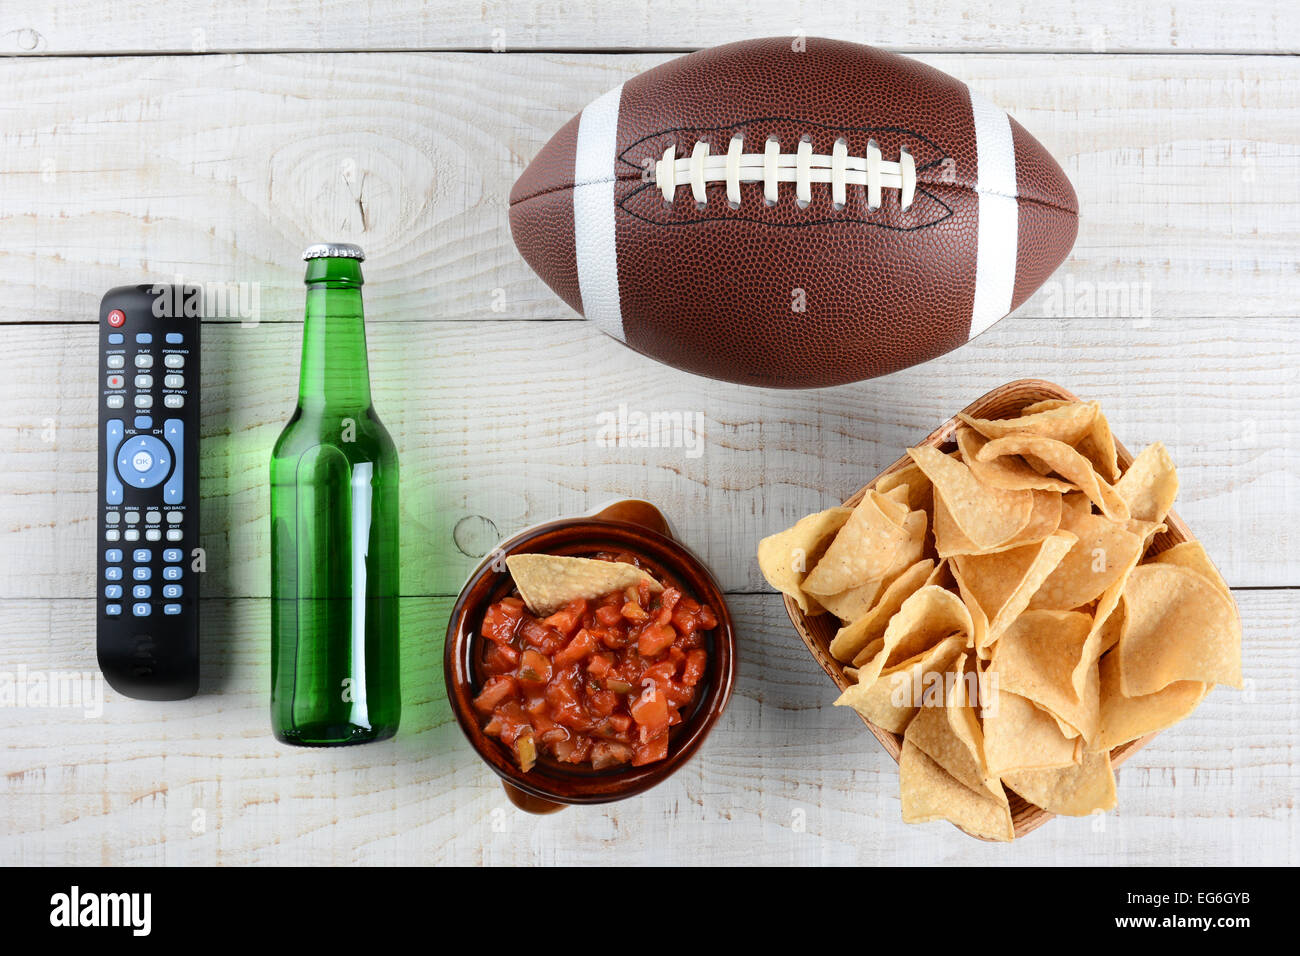 TV-Fernbedienung, Bierflasche, Schüssel mit Chips mit Salsa und ein amerikanisches Fußball auf einem rustikalen weiß getünchten Holzoberfläche. Horizontale Stockfoto